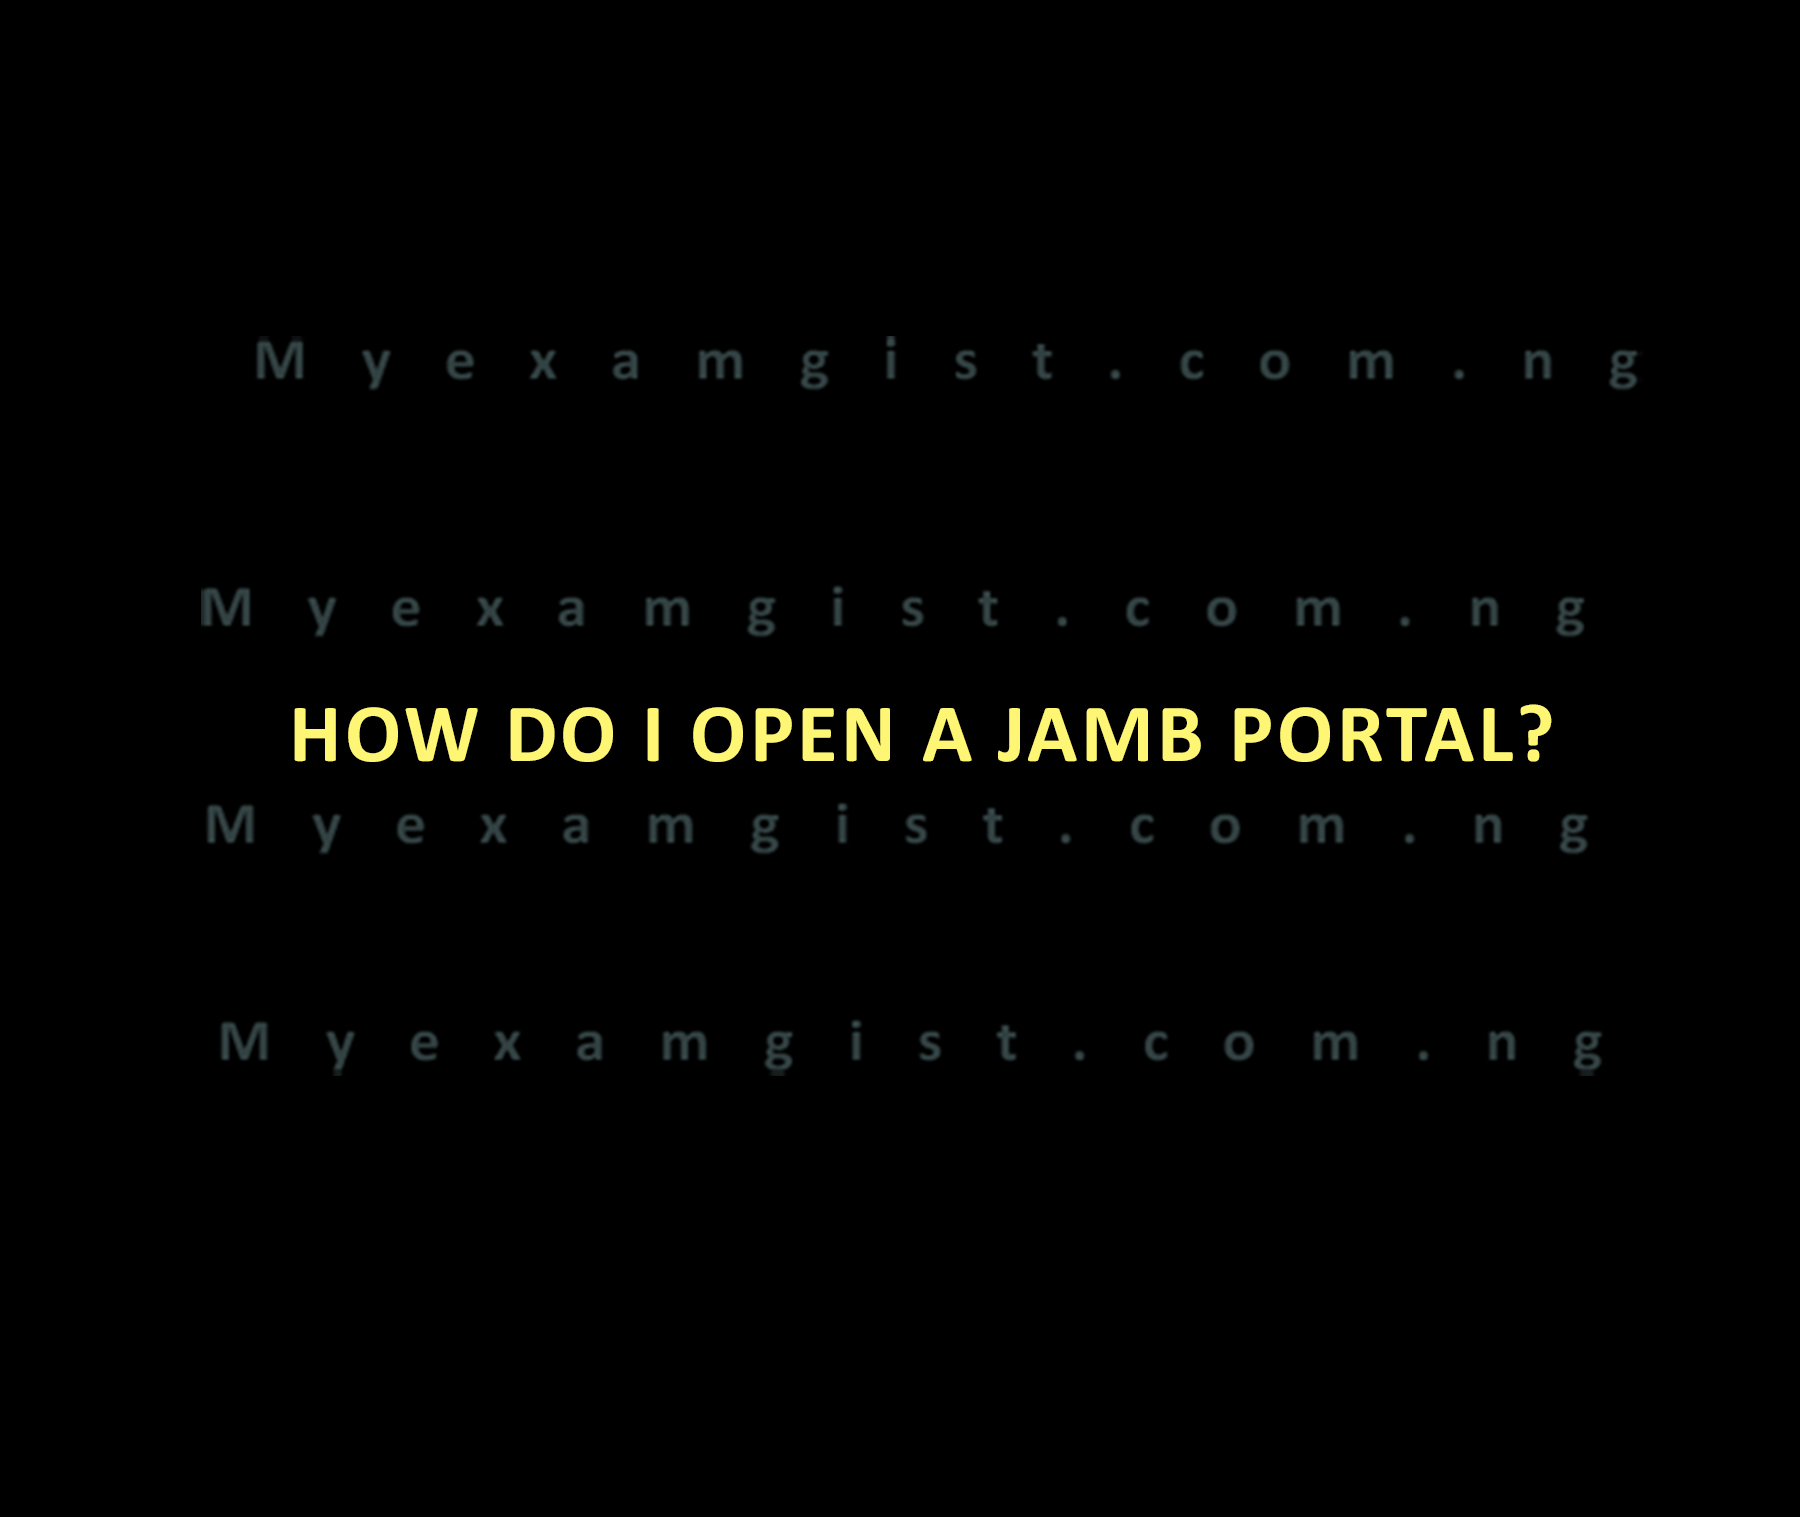 How do I open a JAMB portal?